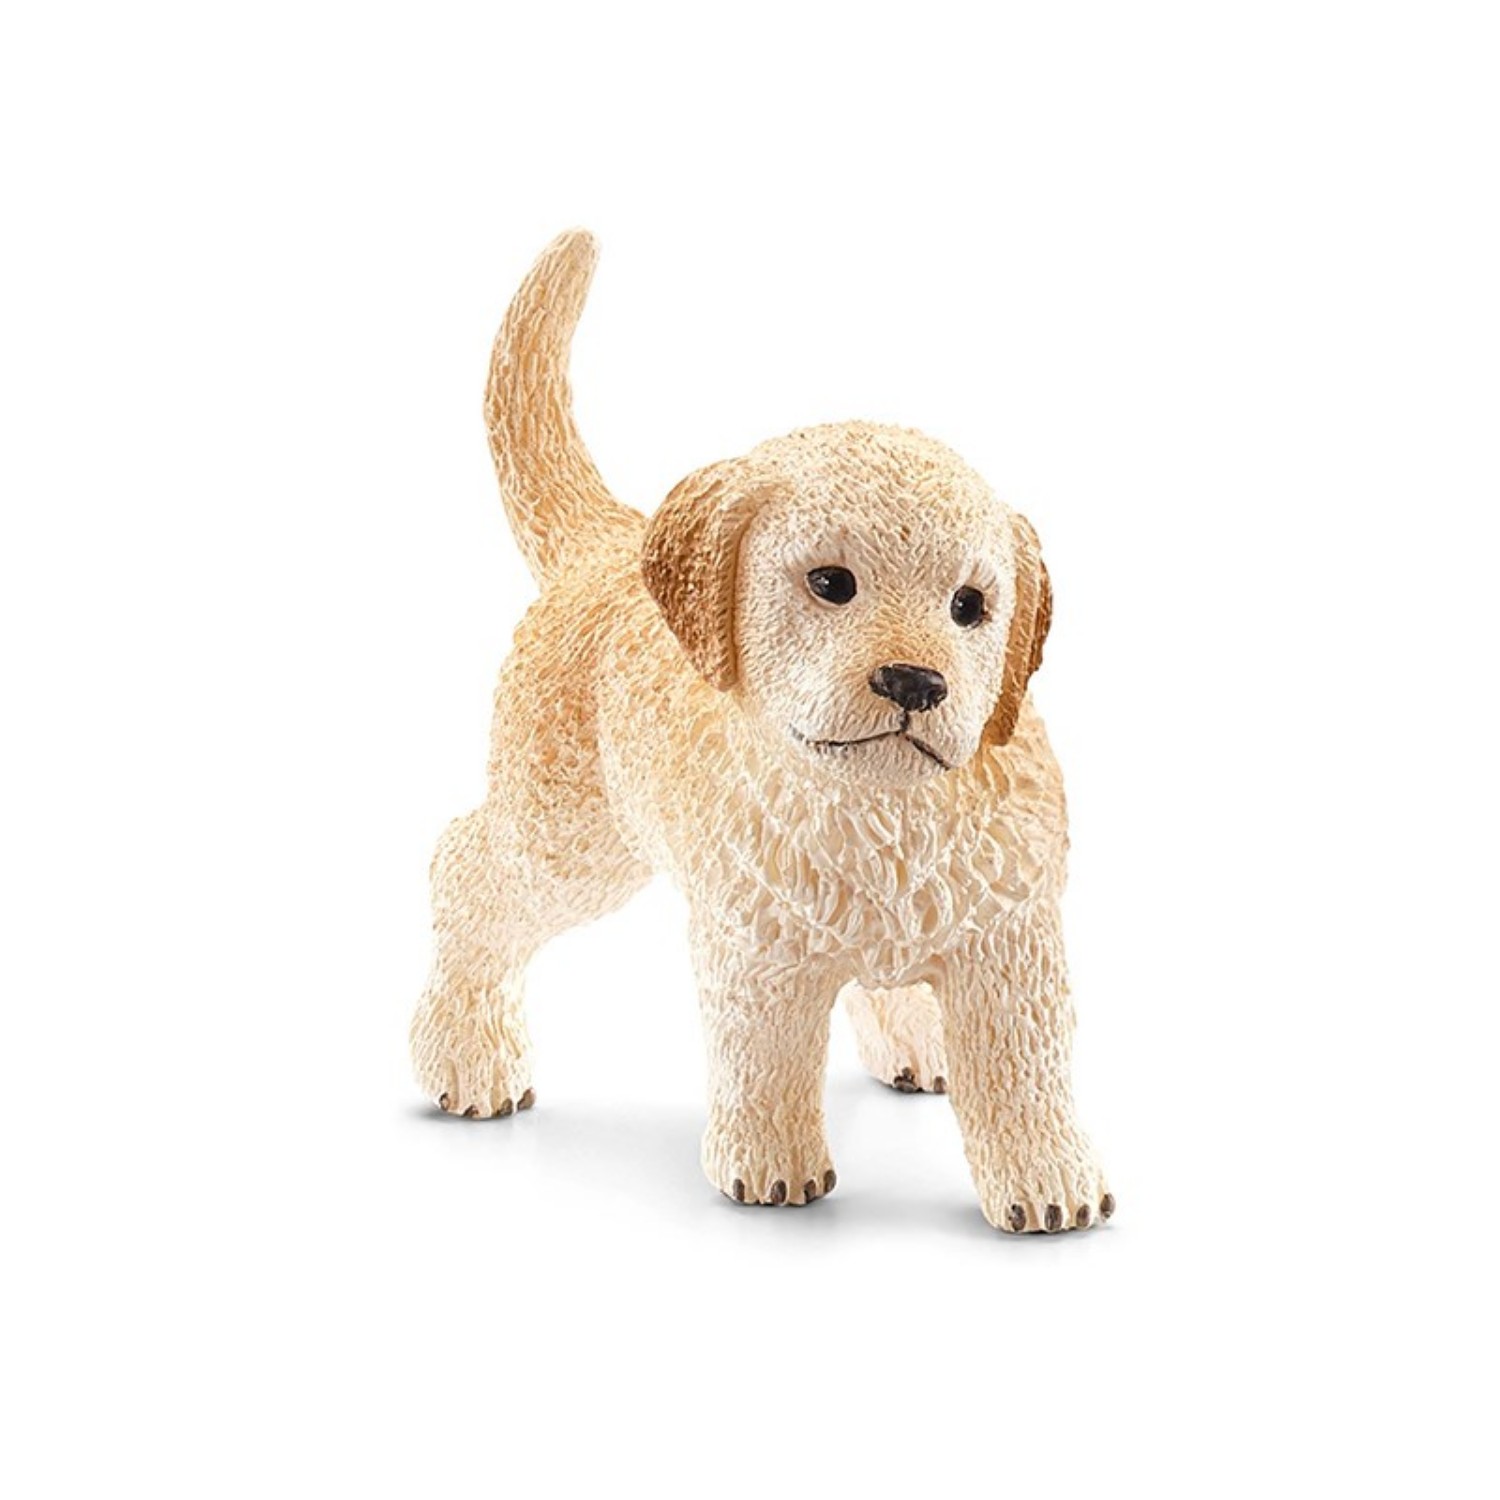 Schleich 16396 Golden Retriever Pup